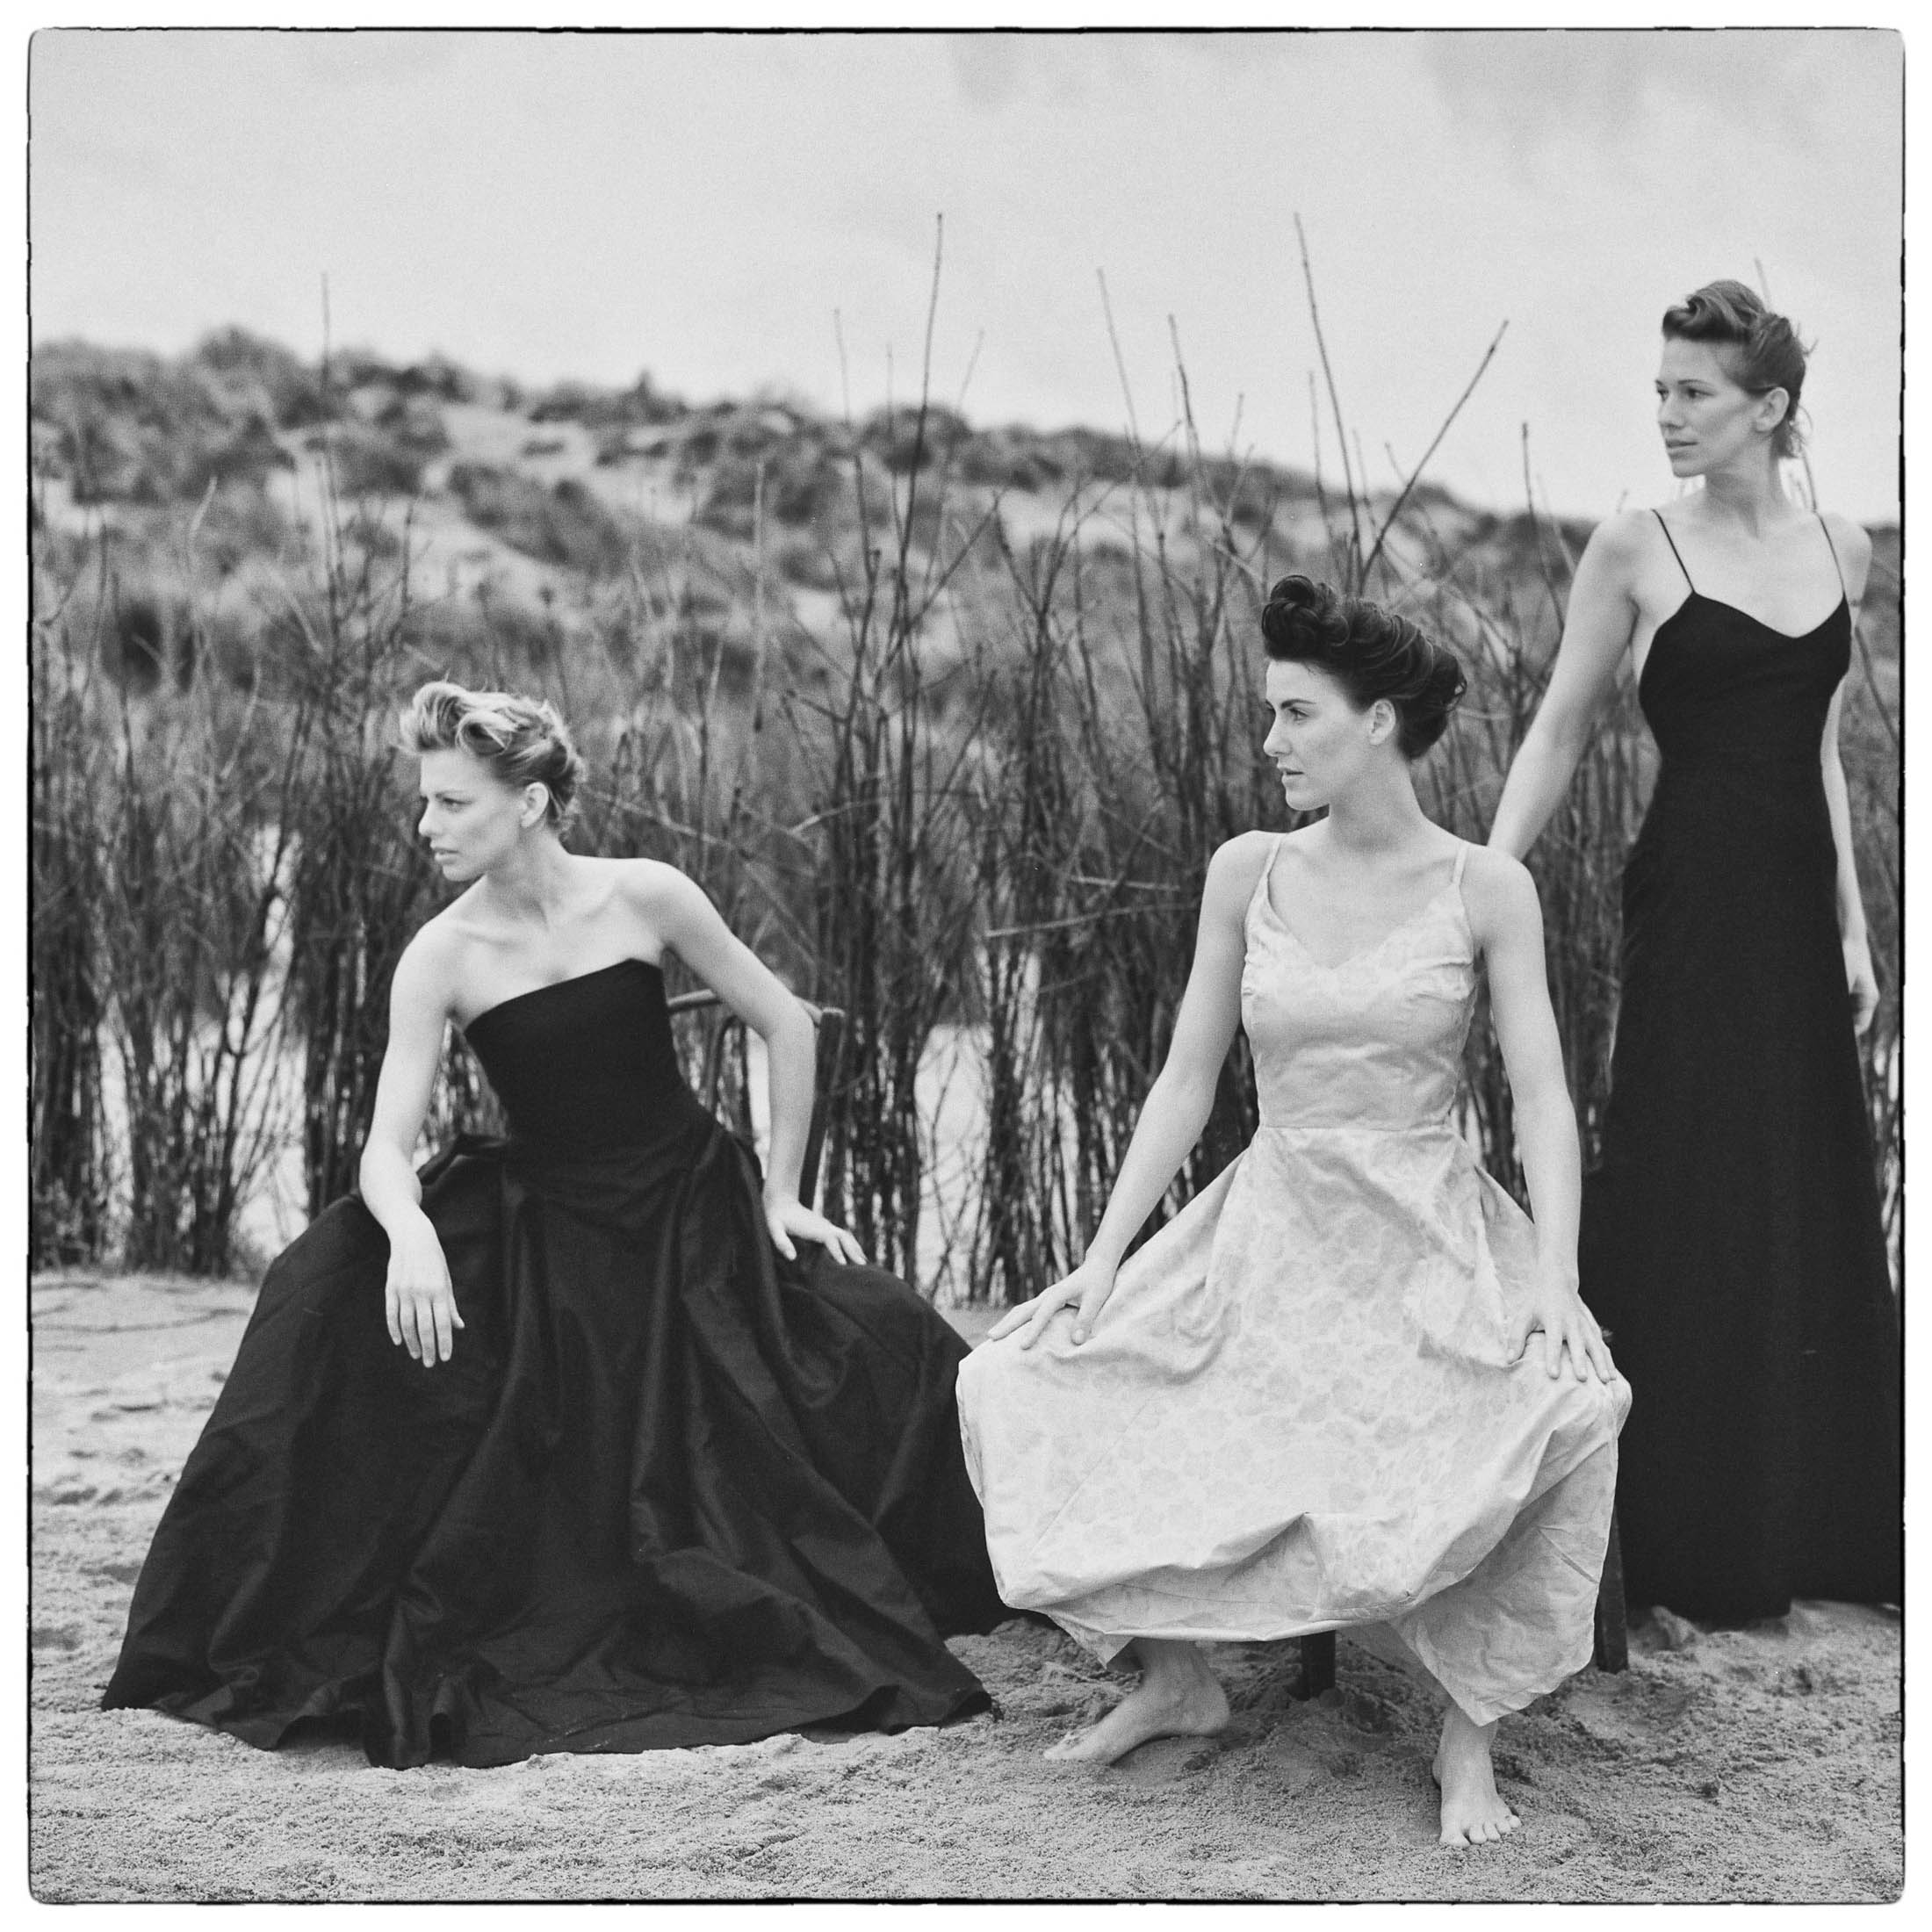 Drei Frauen in eleganten Kleidern stehen barfuß auf einer Sandfläche mit hohem Gras und wirken nachdenklich unter einem bewölkten Himmel. Die Kulisse deutet auf ein Vintage- oder zeitloses Thema hin. © Fotografie Tomas Rodriguez